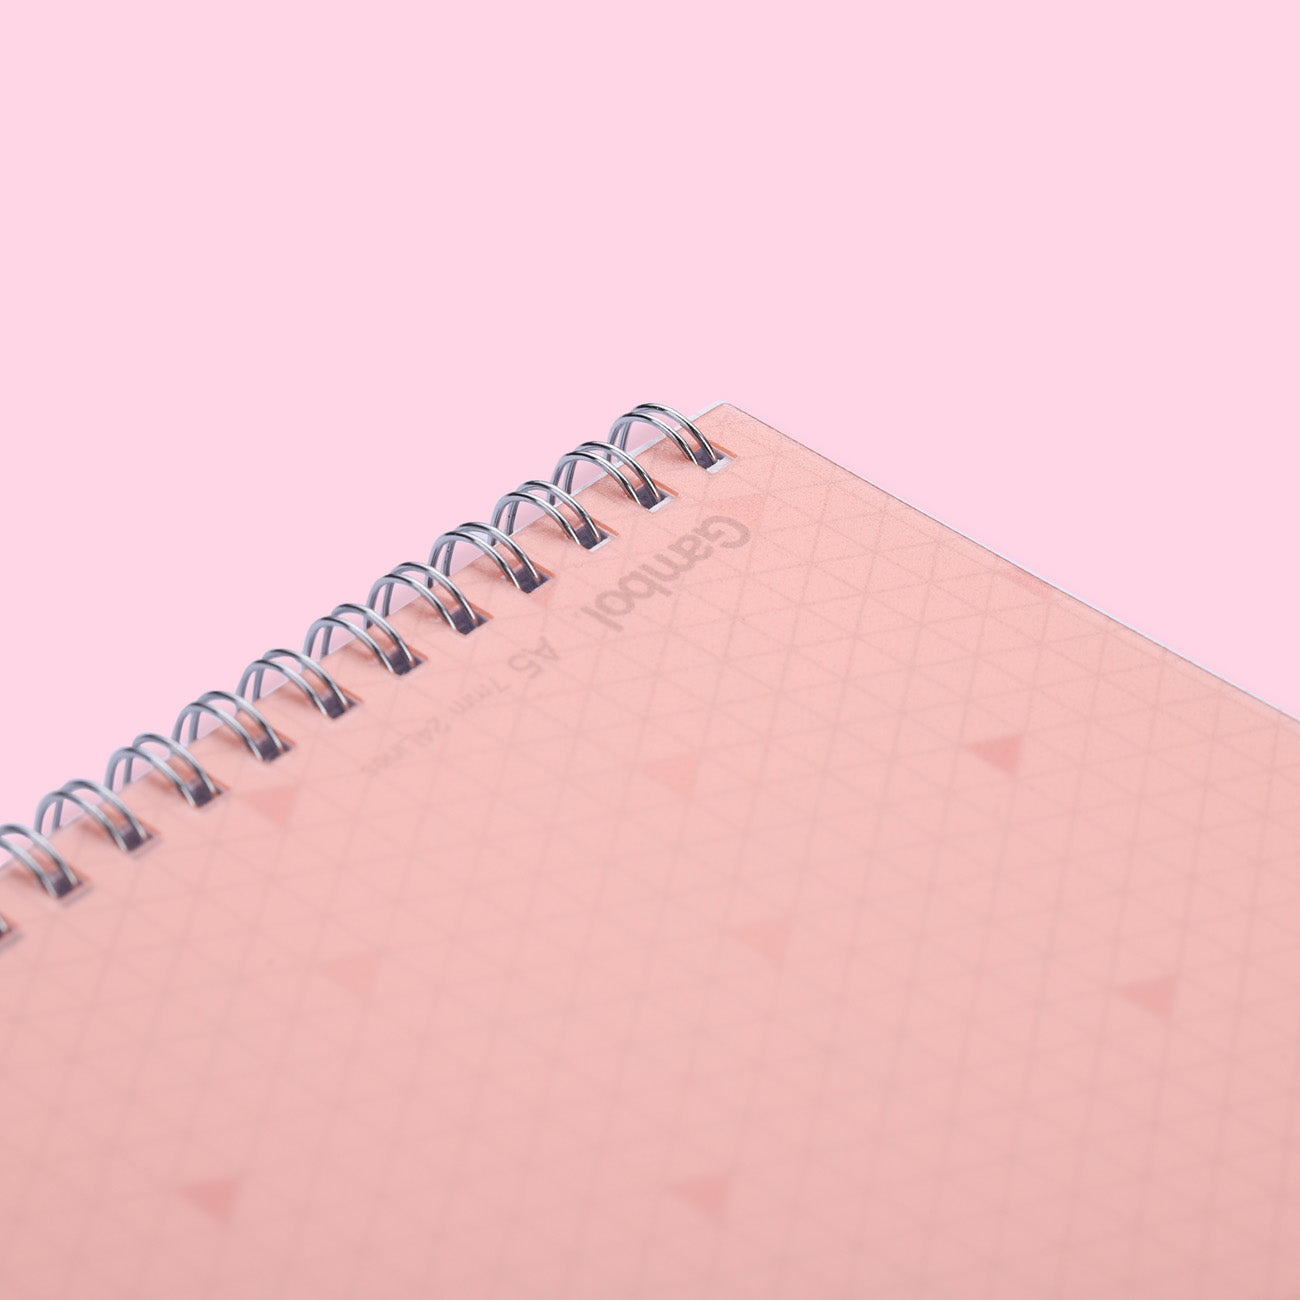 Kokuyo Gambol Color Ring Notebook - A5 - 7 mm Ruled - Pink